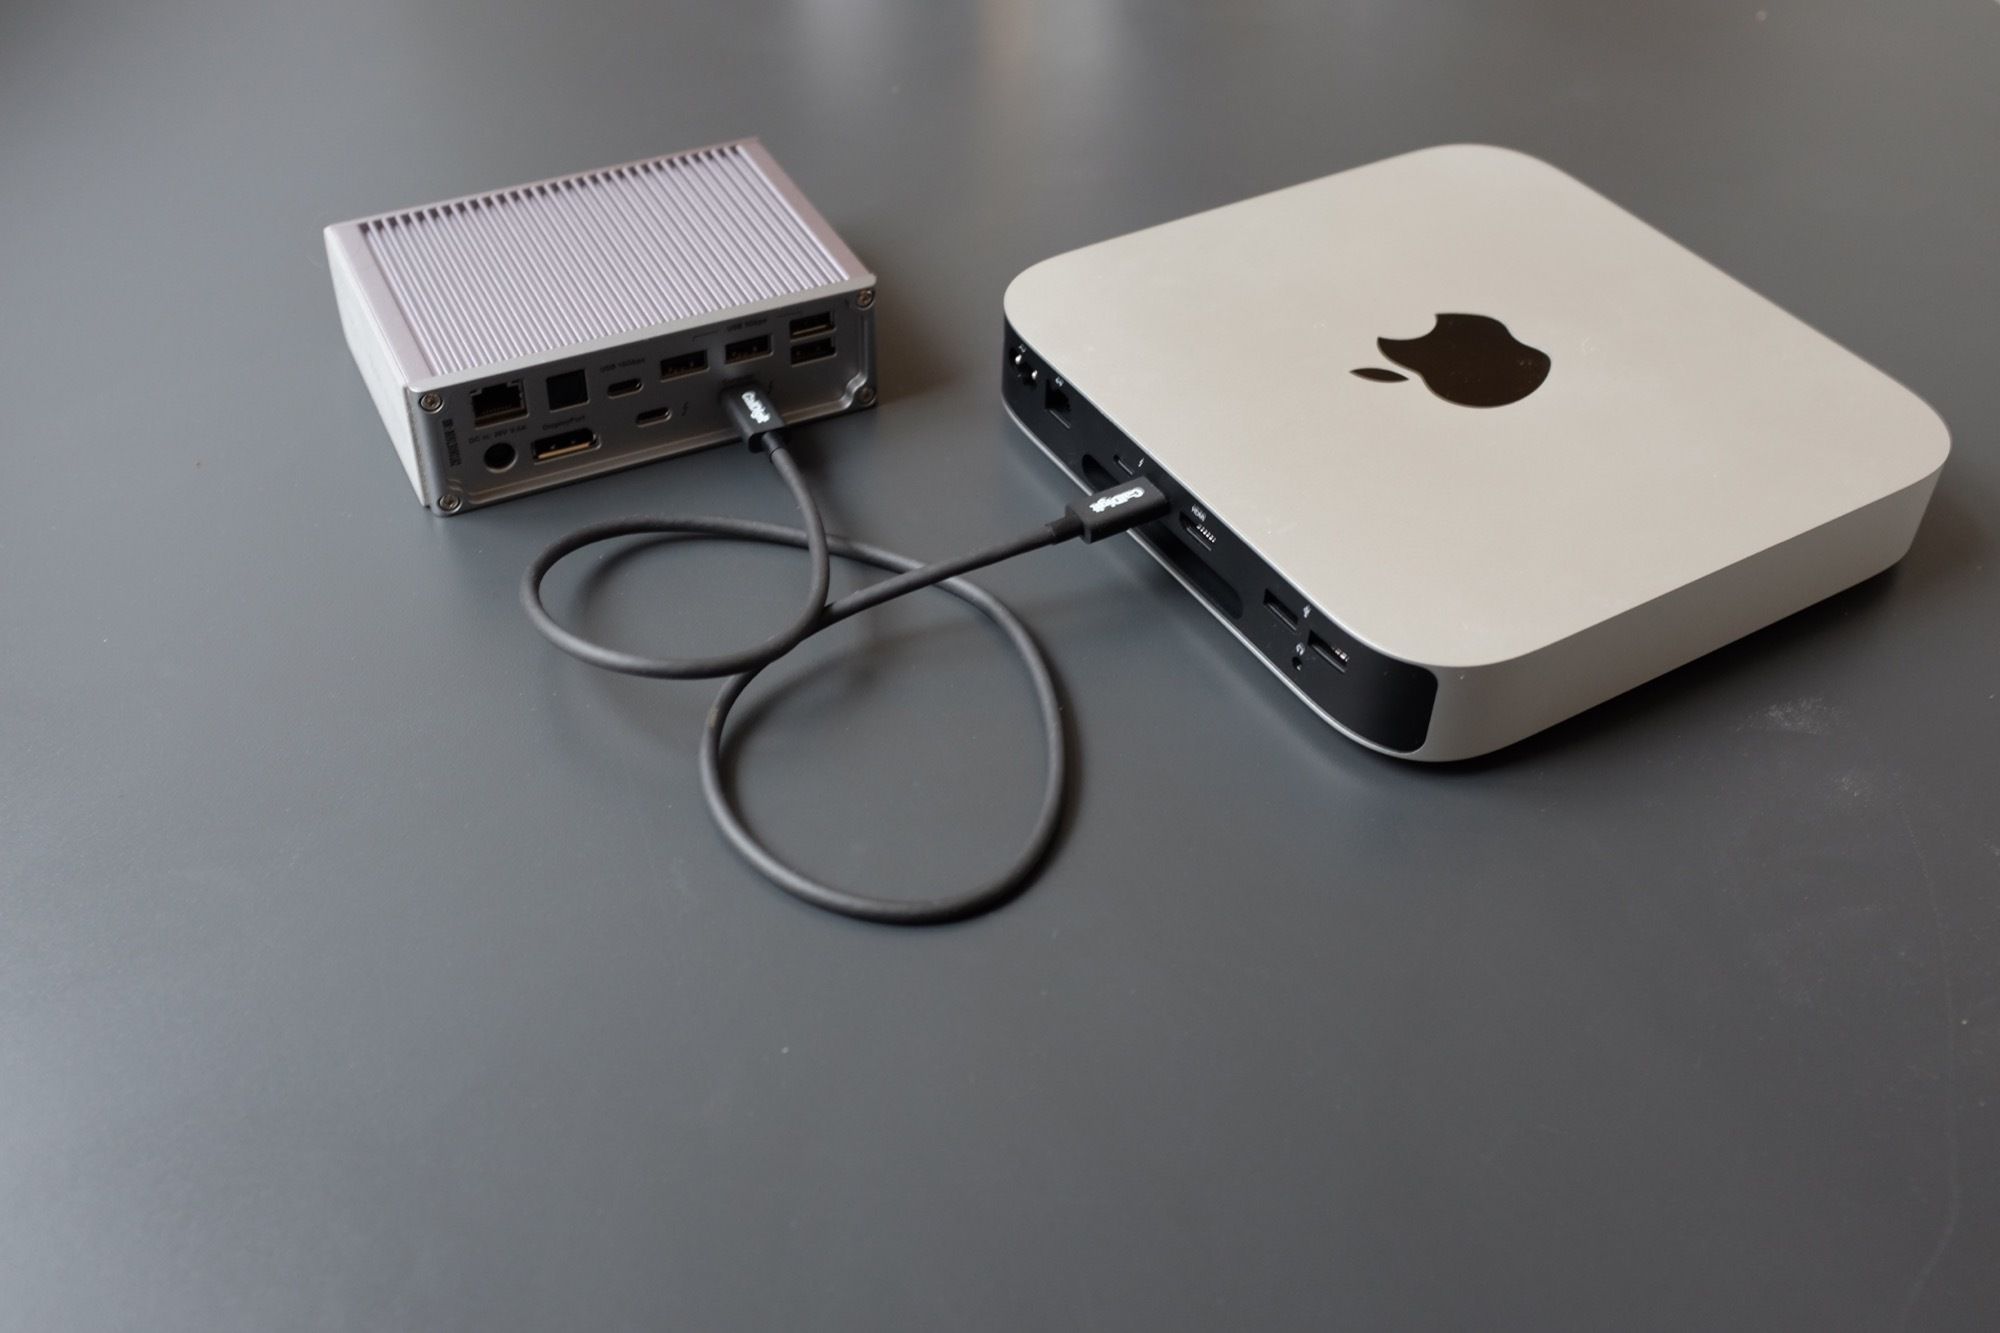 Dock CalDigit TS3 + conectado a um Mac Mini